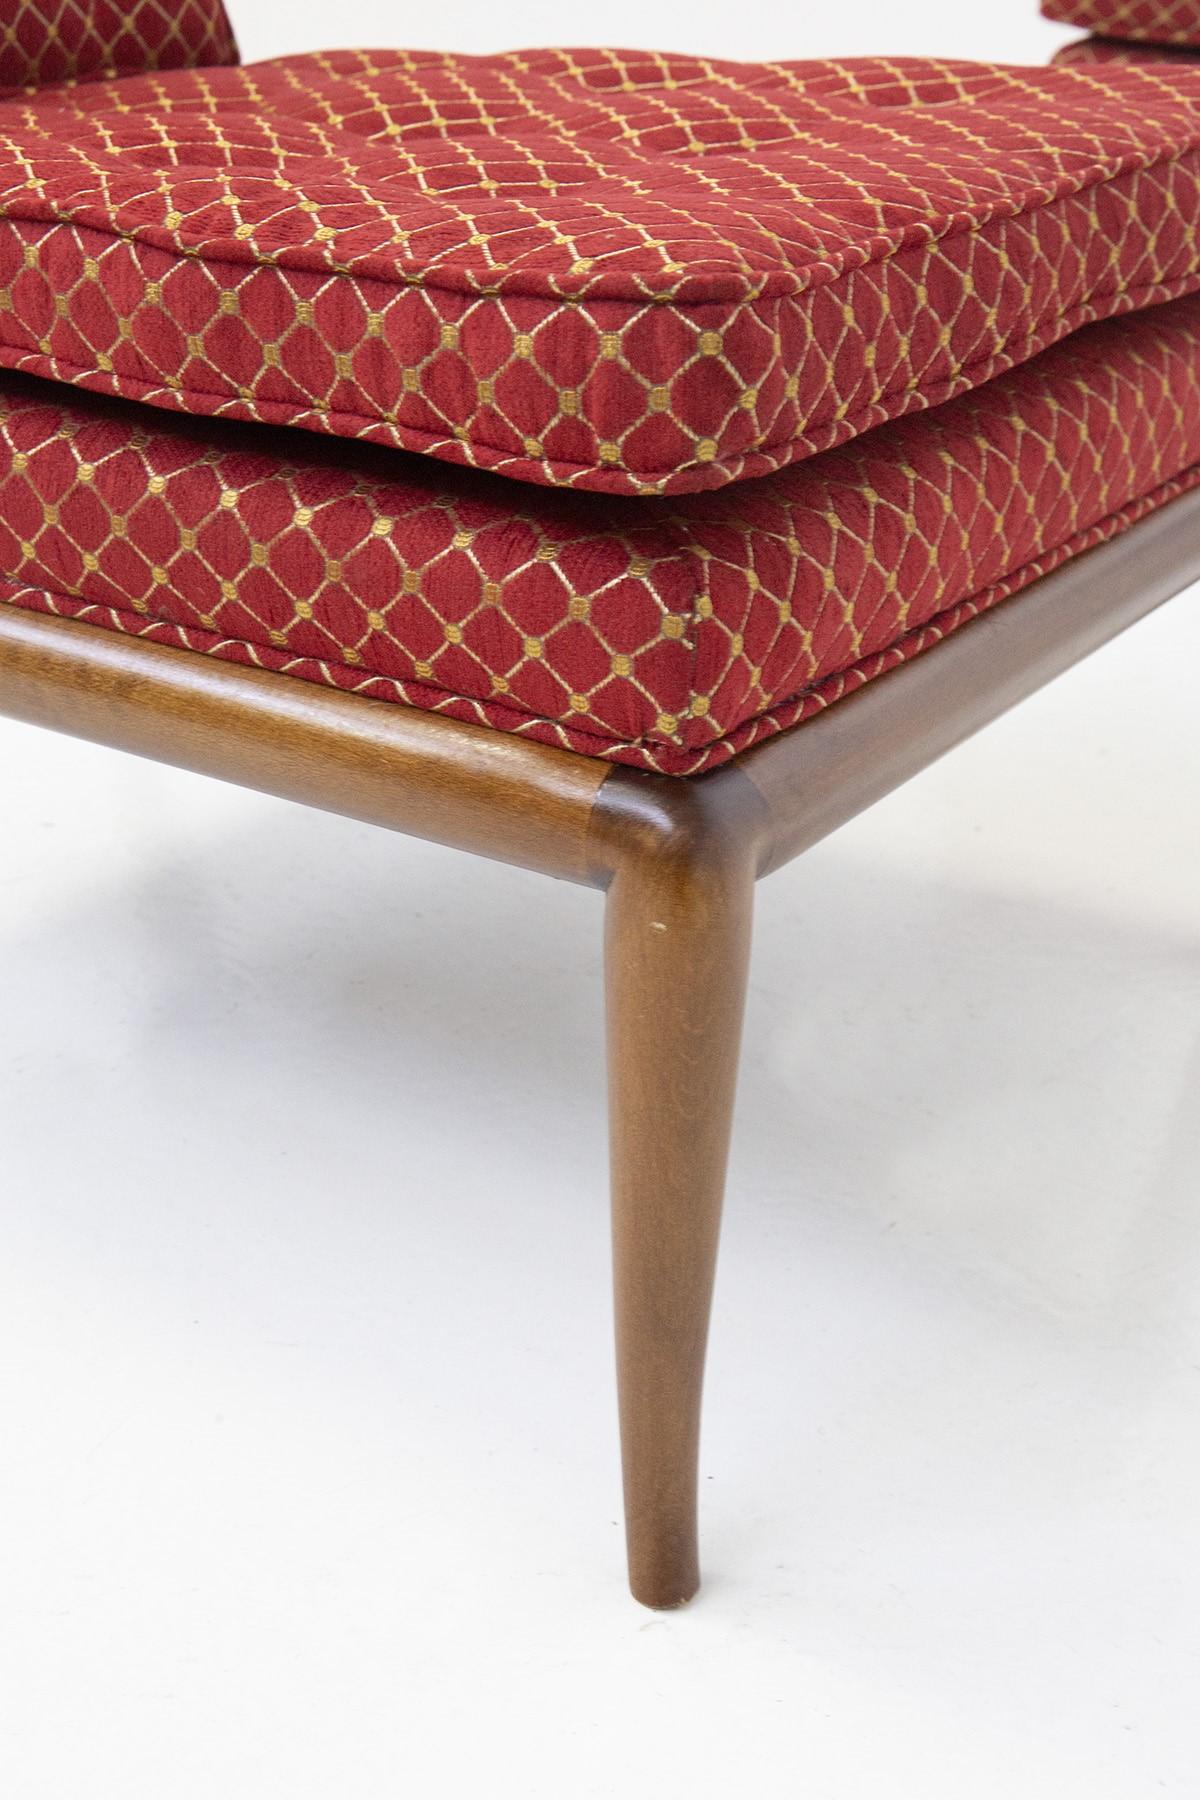 Paar Widdicomb Slipper-Stühle Zeitloses und elegantes Design von T. H. Robsjohn-Gibbings aus den 1950er Jahren
Stühle aus den 1950-1960er Jahren, ausgezeichneter Vintage-Zustand. Kürzlich neu lackiert und mit einem roten Stoff bezogen.
Rahmen aus